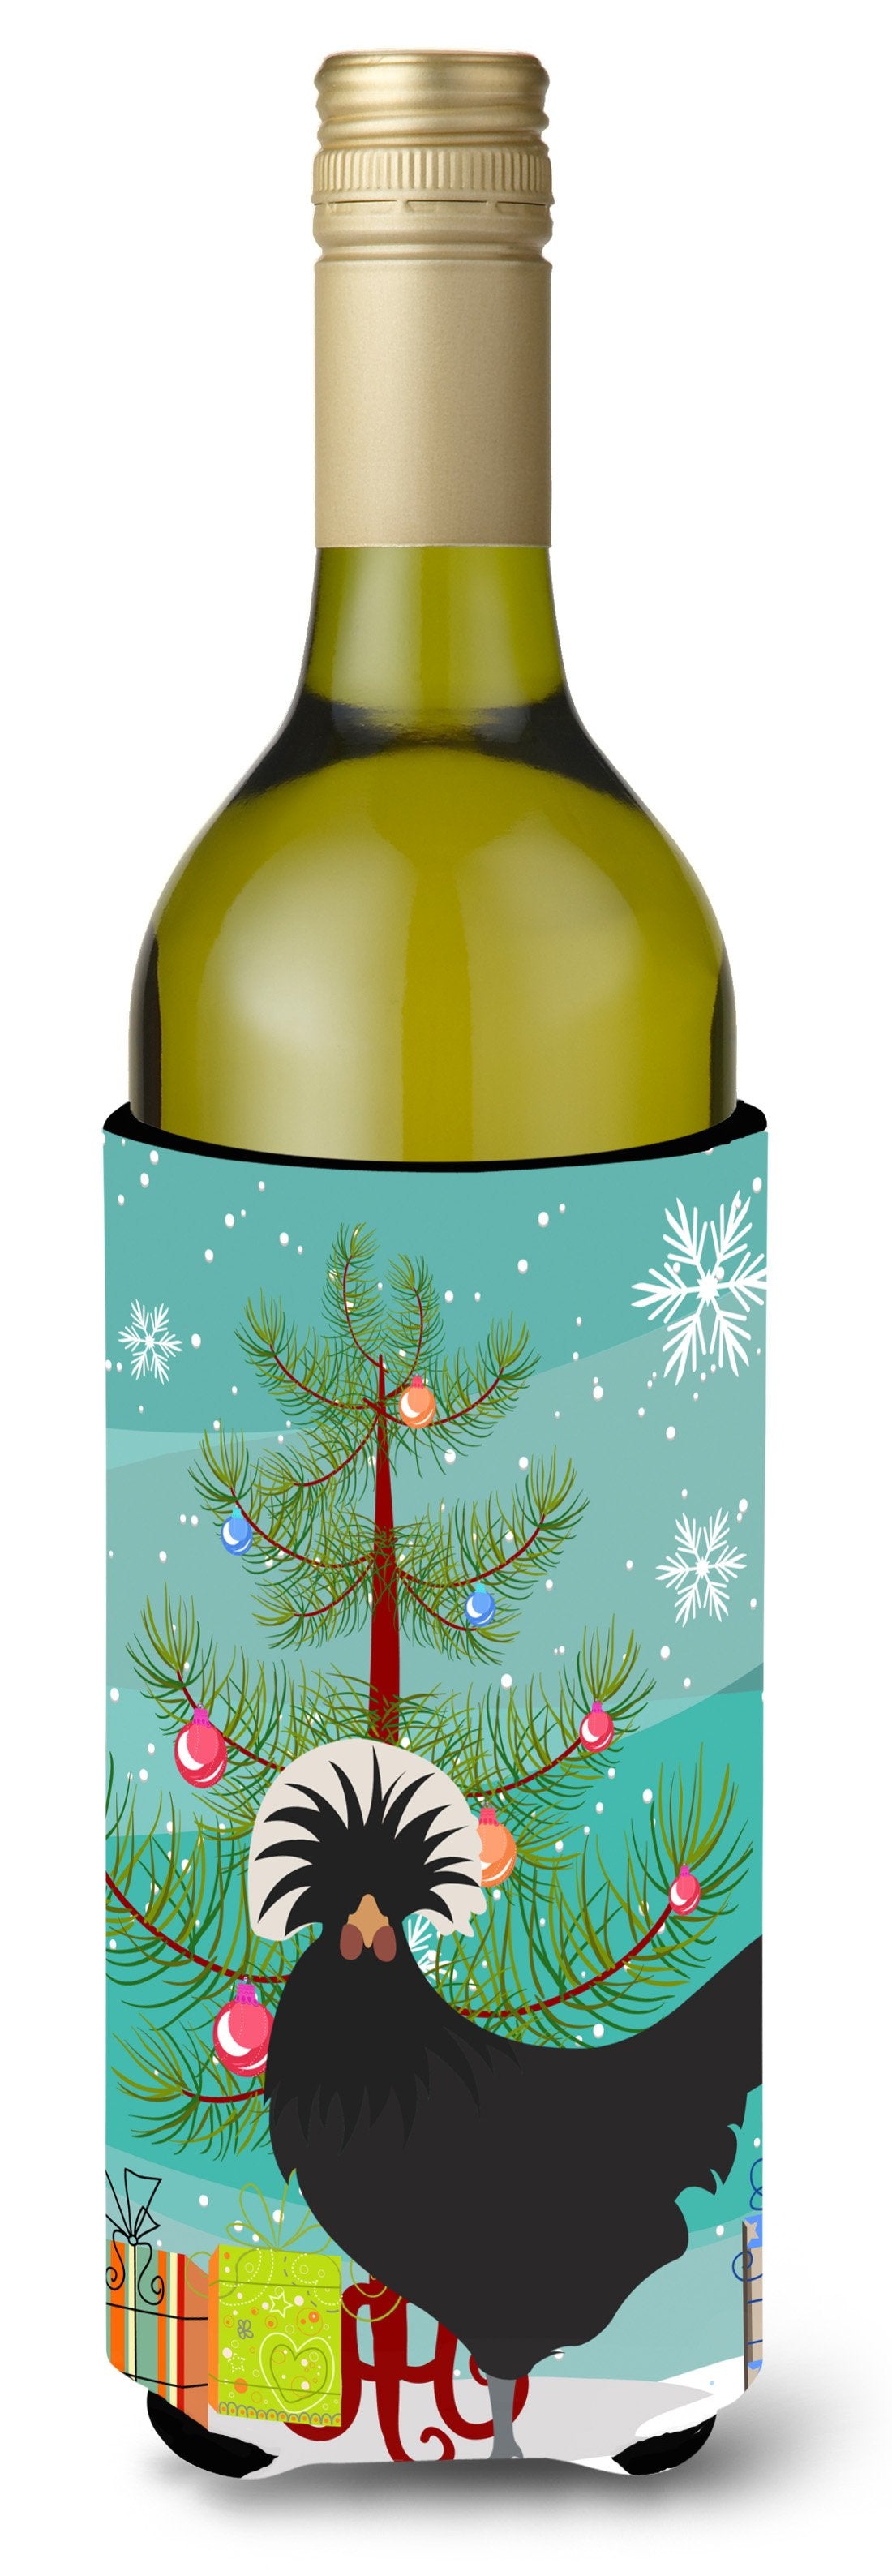 Polish Poland Chicken Christmas Wine Bottle Beverge Insulator Hugger BB9201LITERK by Caroline's Treasures